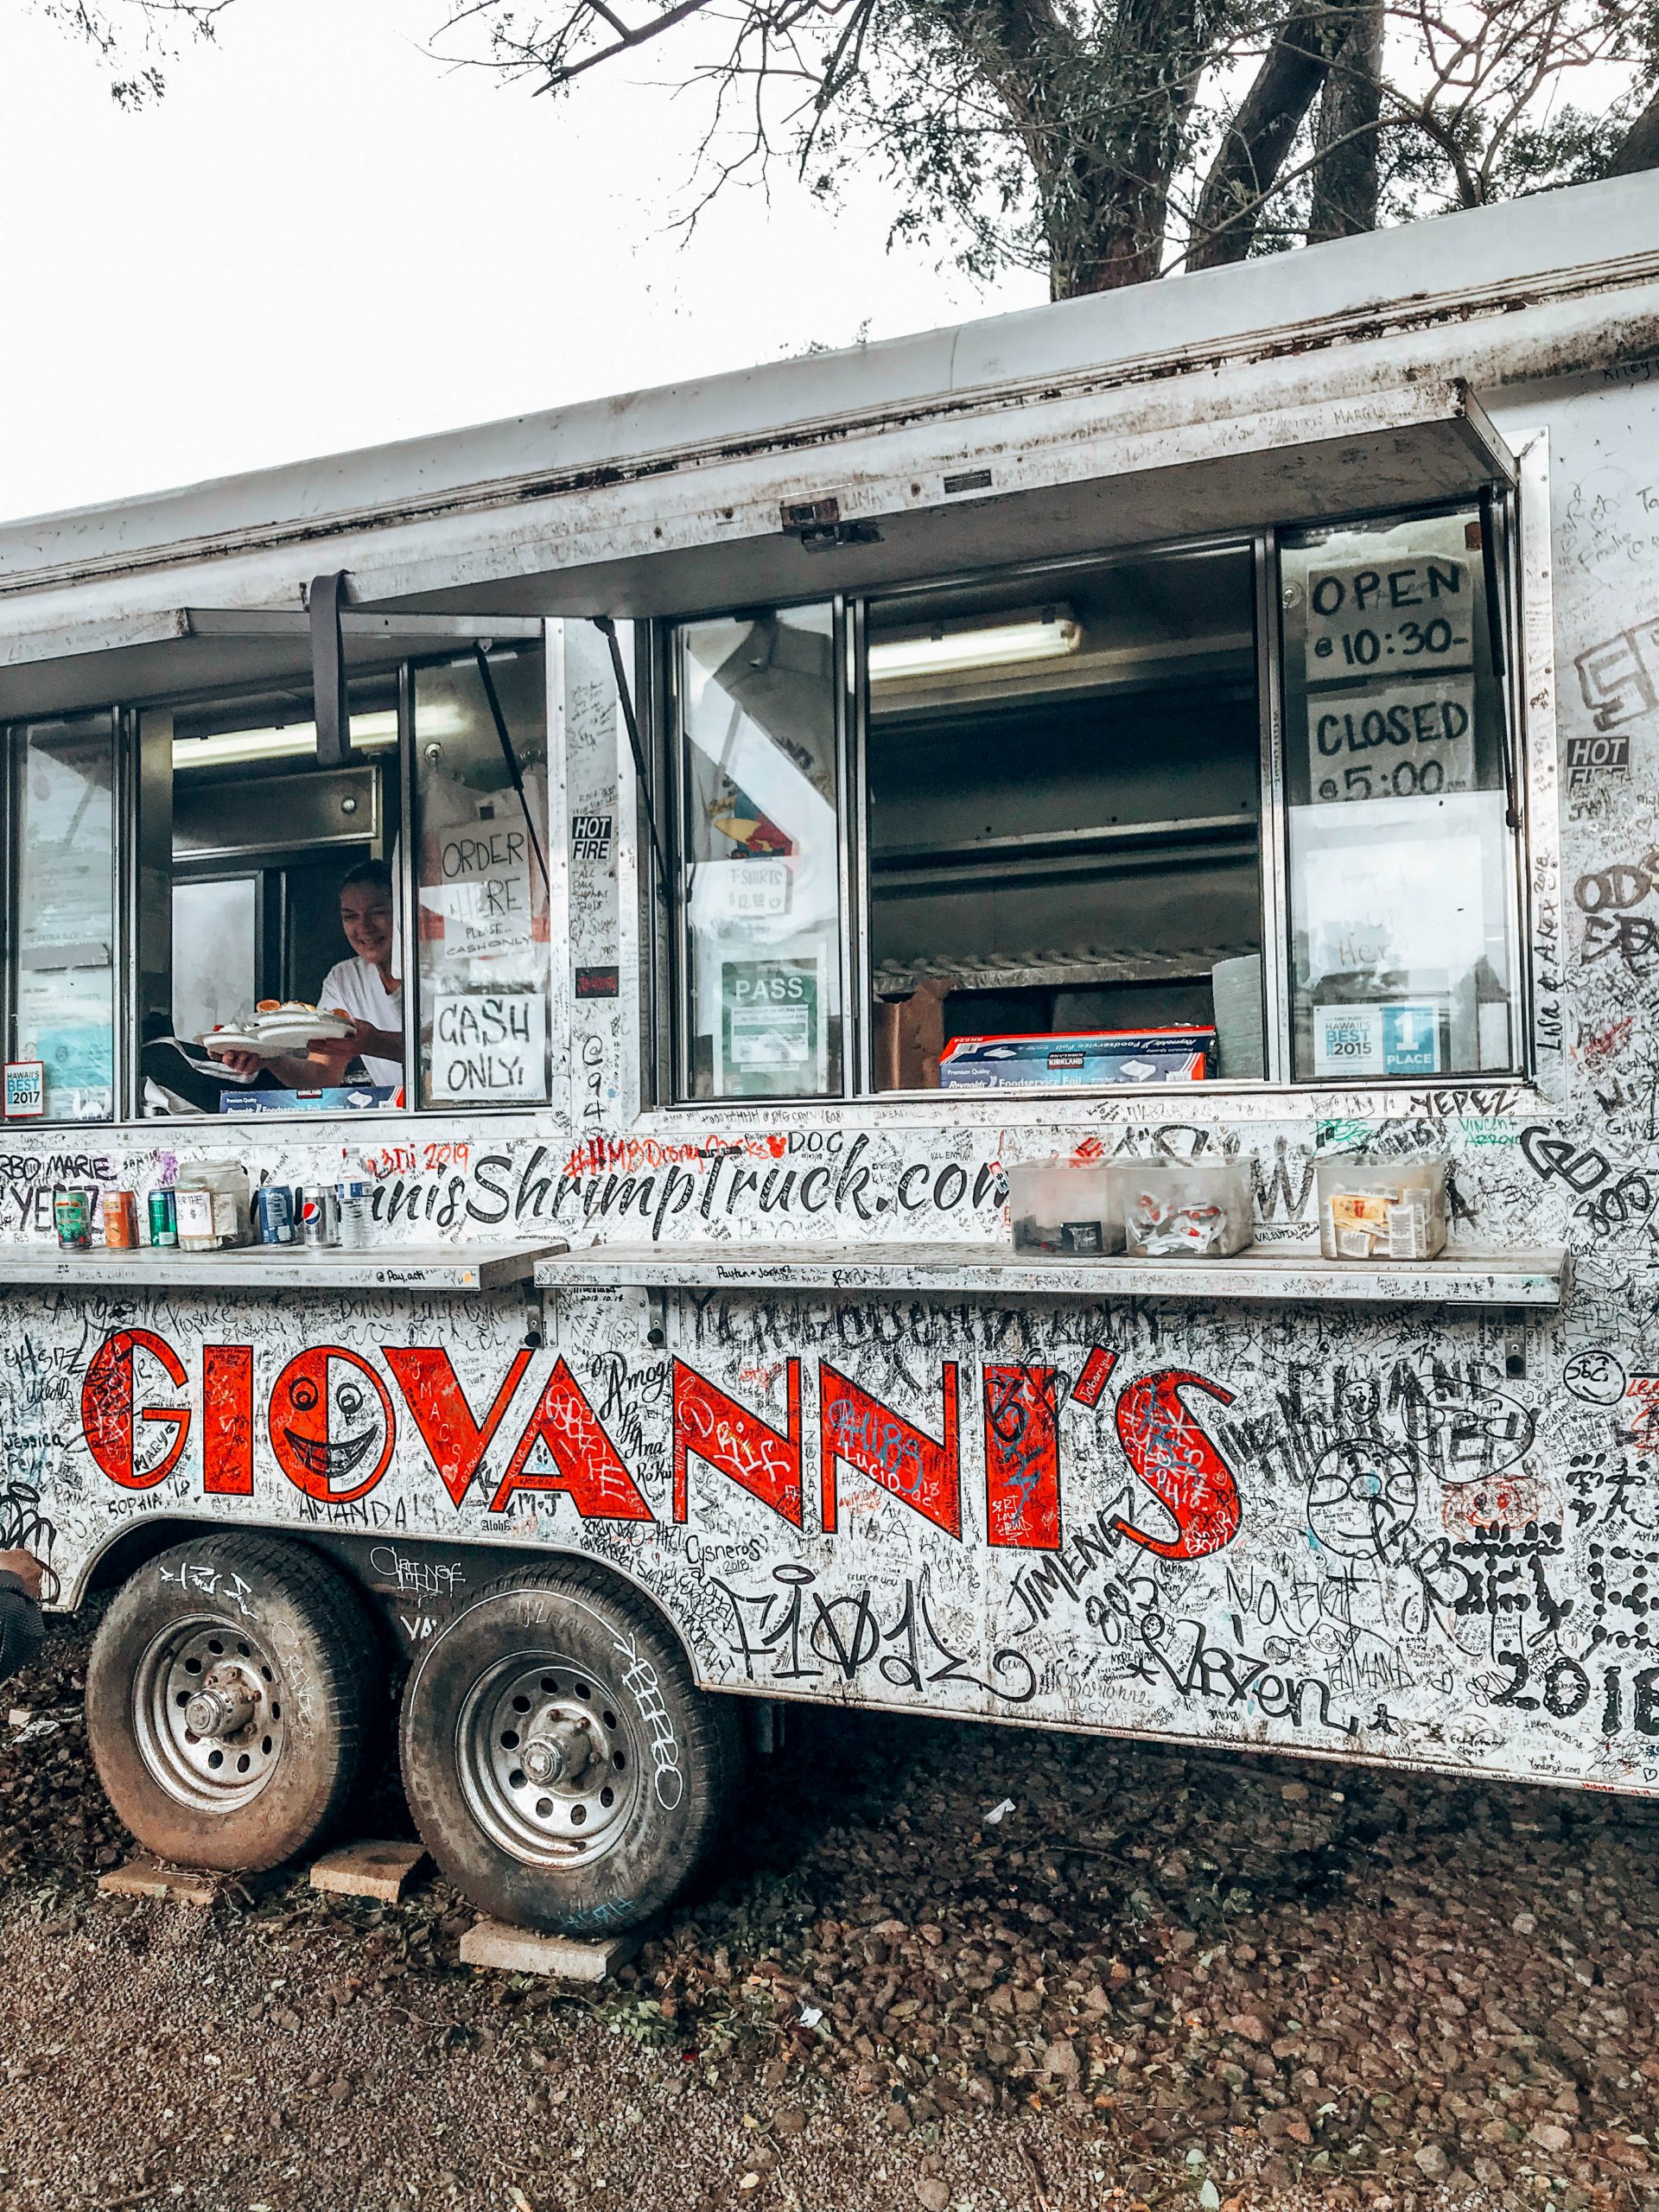 Giovanni’s shrimp truck